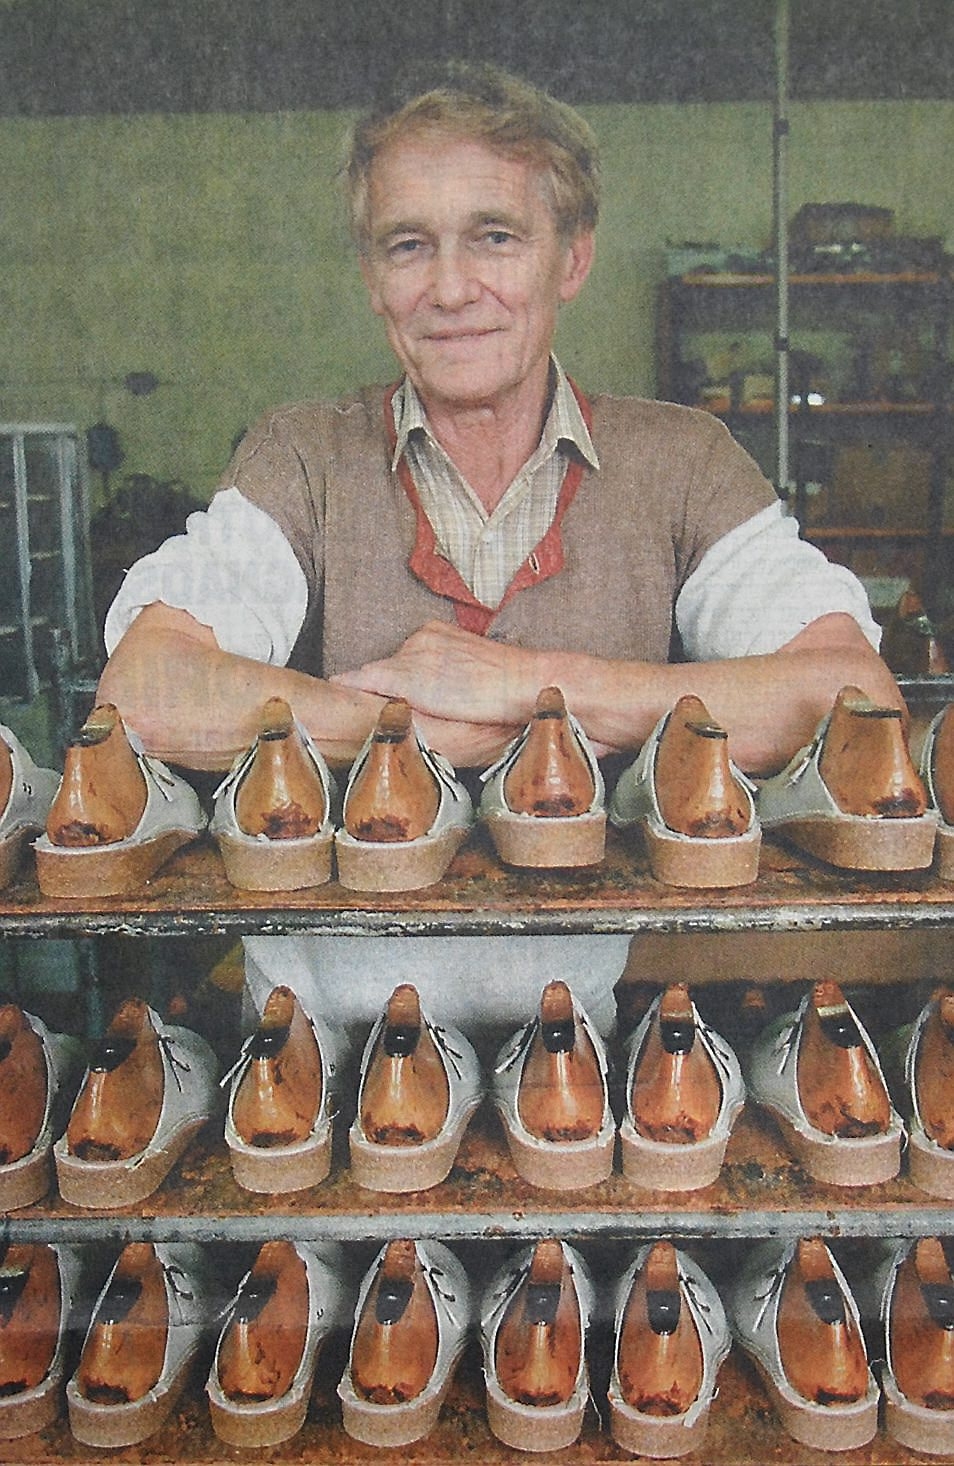 I Bjärnum bedriver Bengt Bengtsson tillverkning av en klassiker, en slipper i läder med kilklack av kork.
Arkiv: Gugge Nilsson